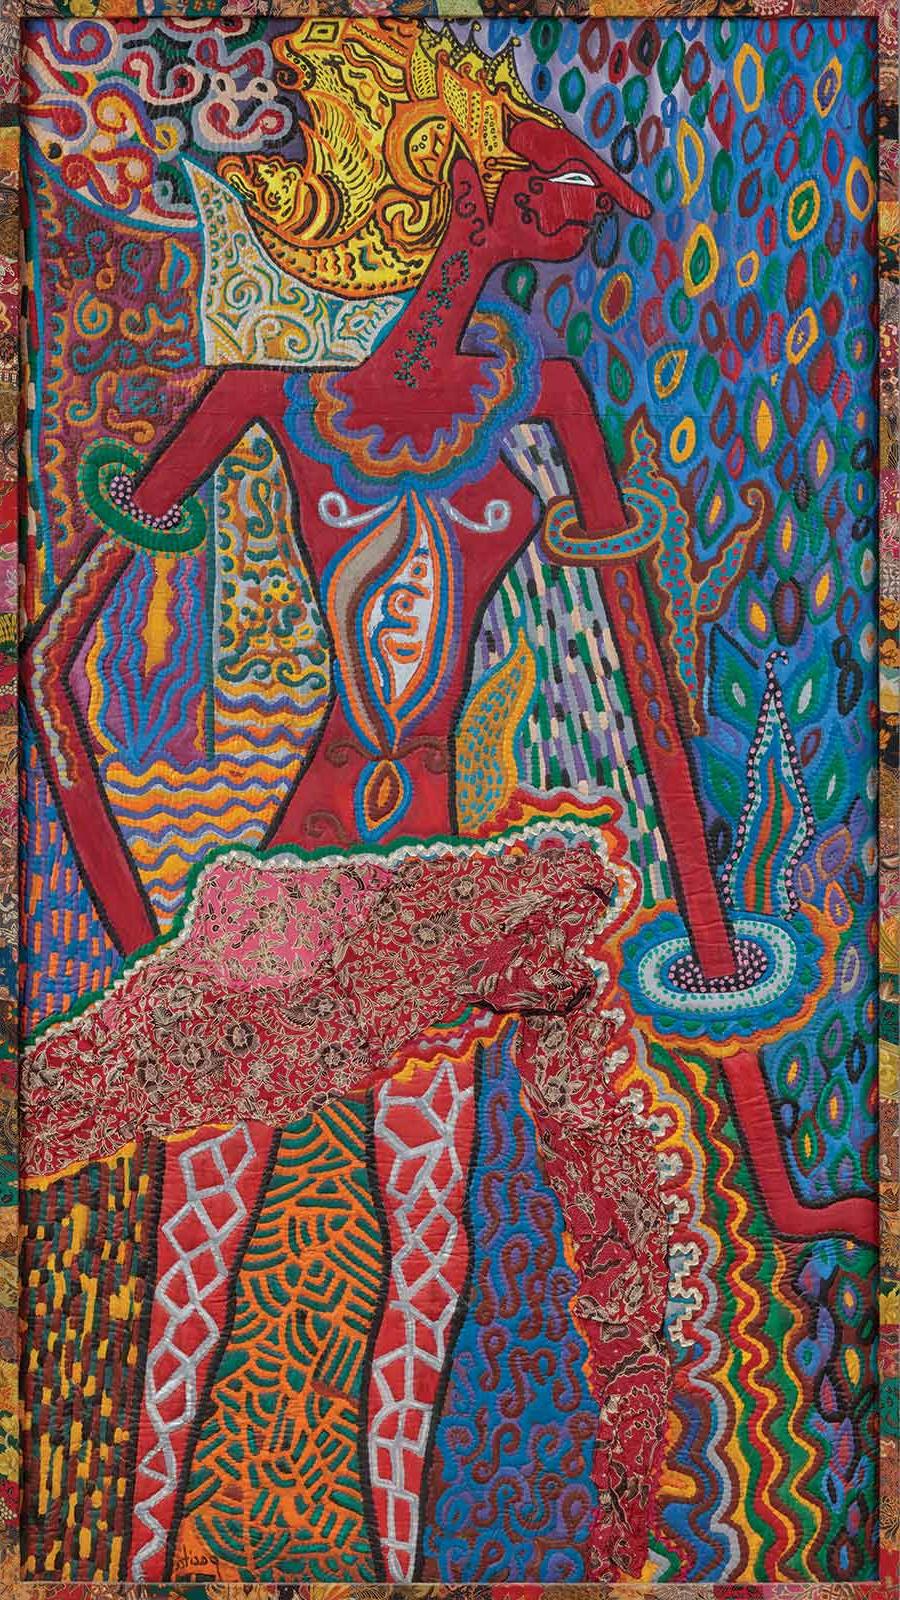 罗摩, 帕西塔·阿巴德(Pacita Abad, 菲律宾, 1946–2004, 新加坡), from the “Masks and Spirits” series, 1982. 